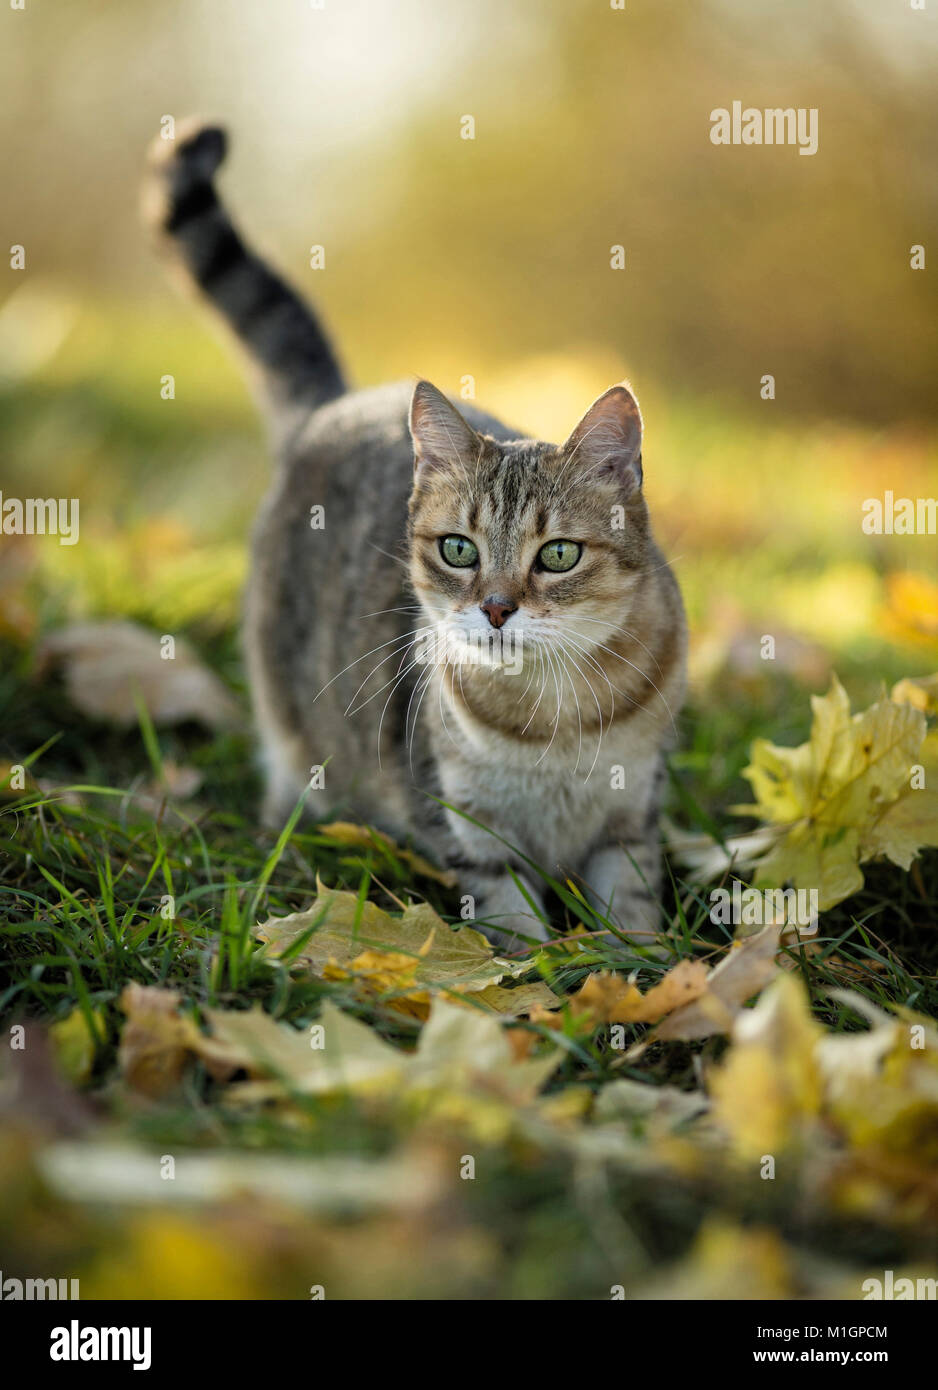 Britisch kurzhaar katze erwachsenen stehend Stockfotos und -bilder